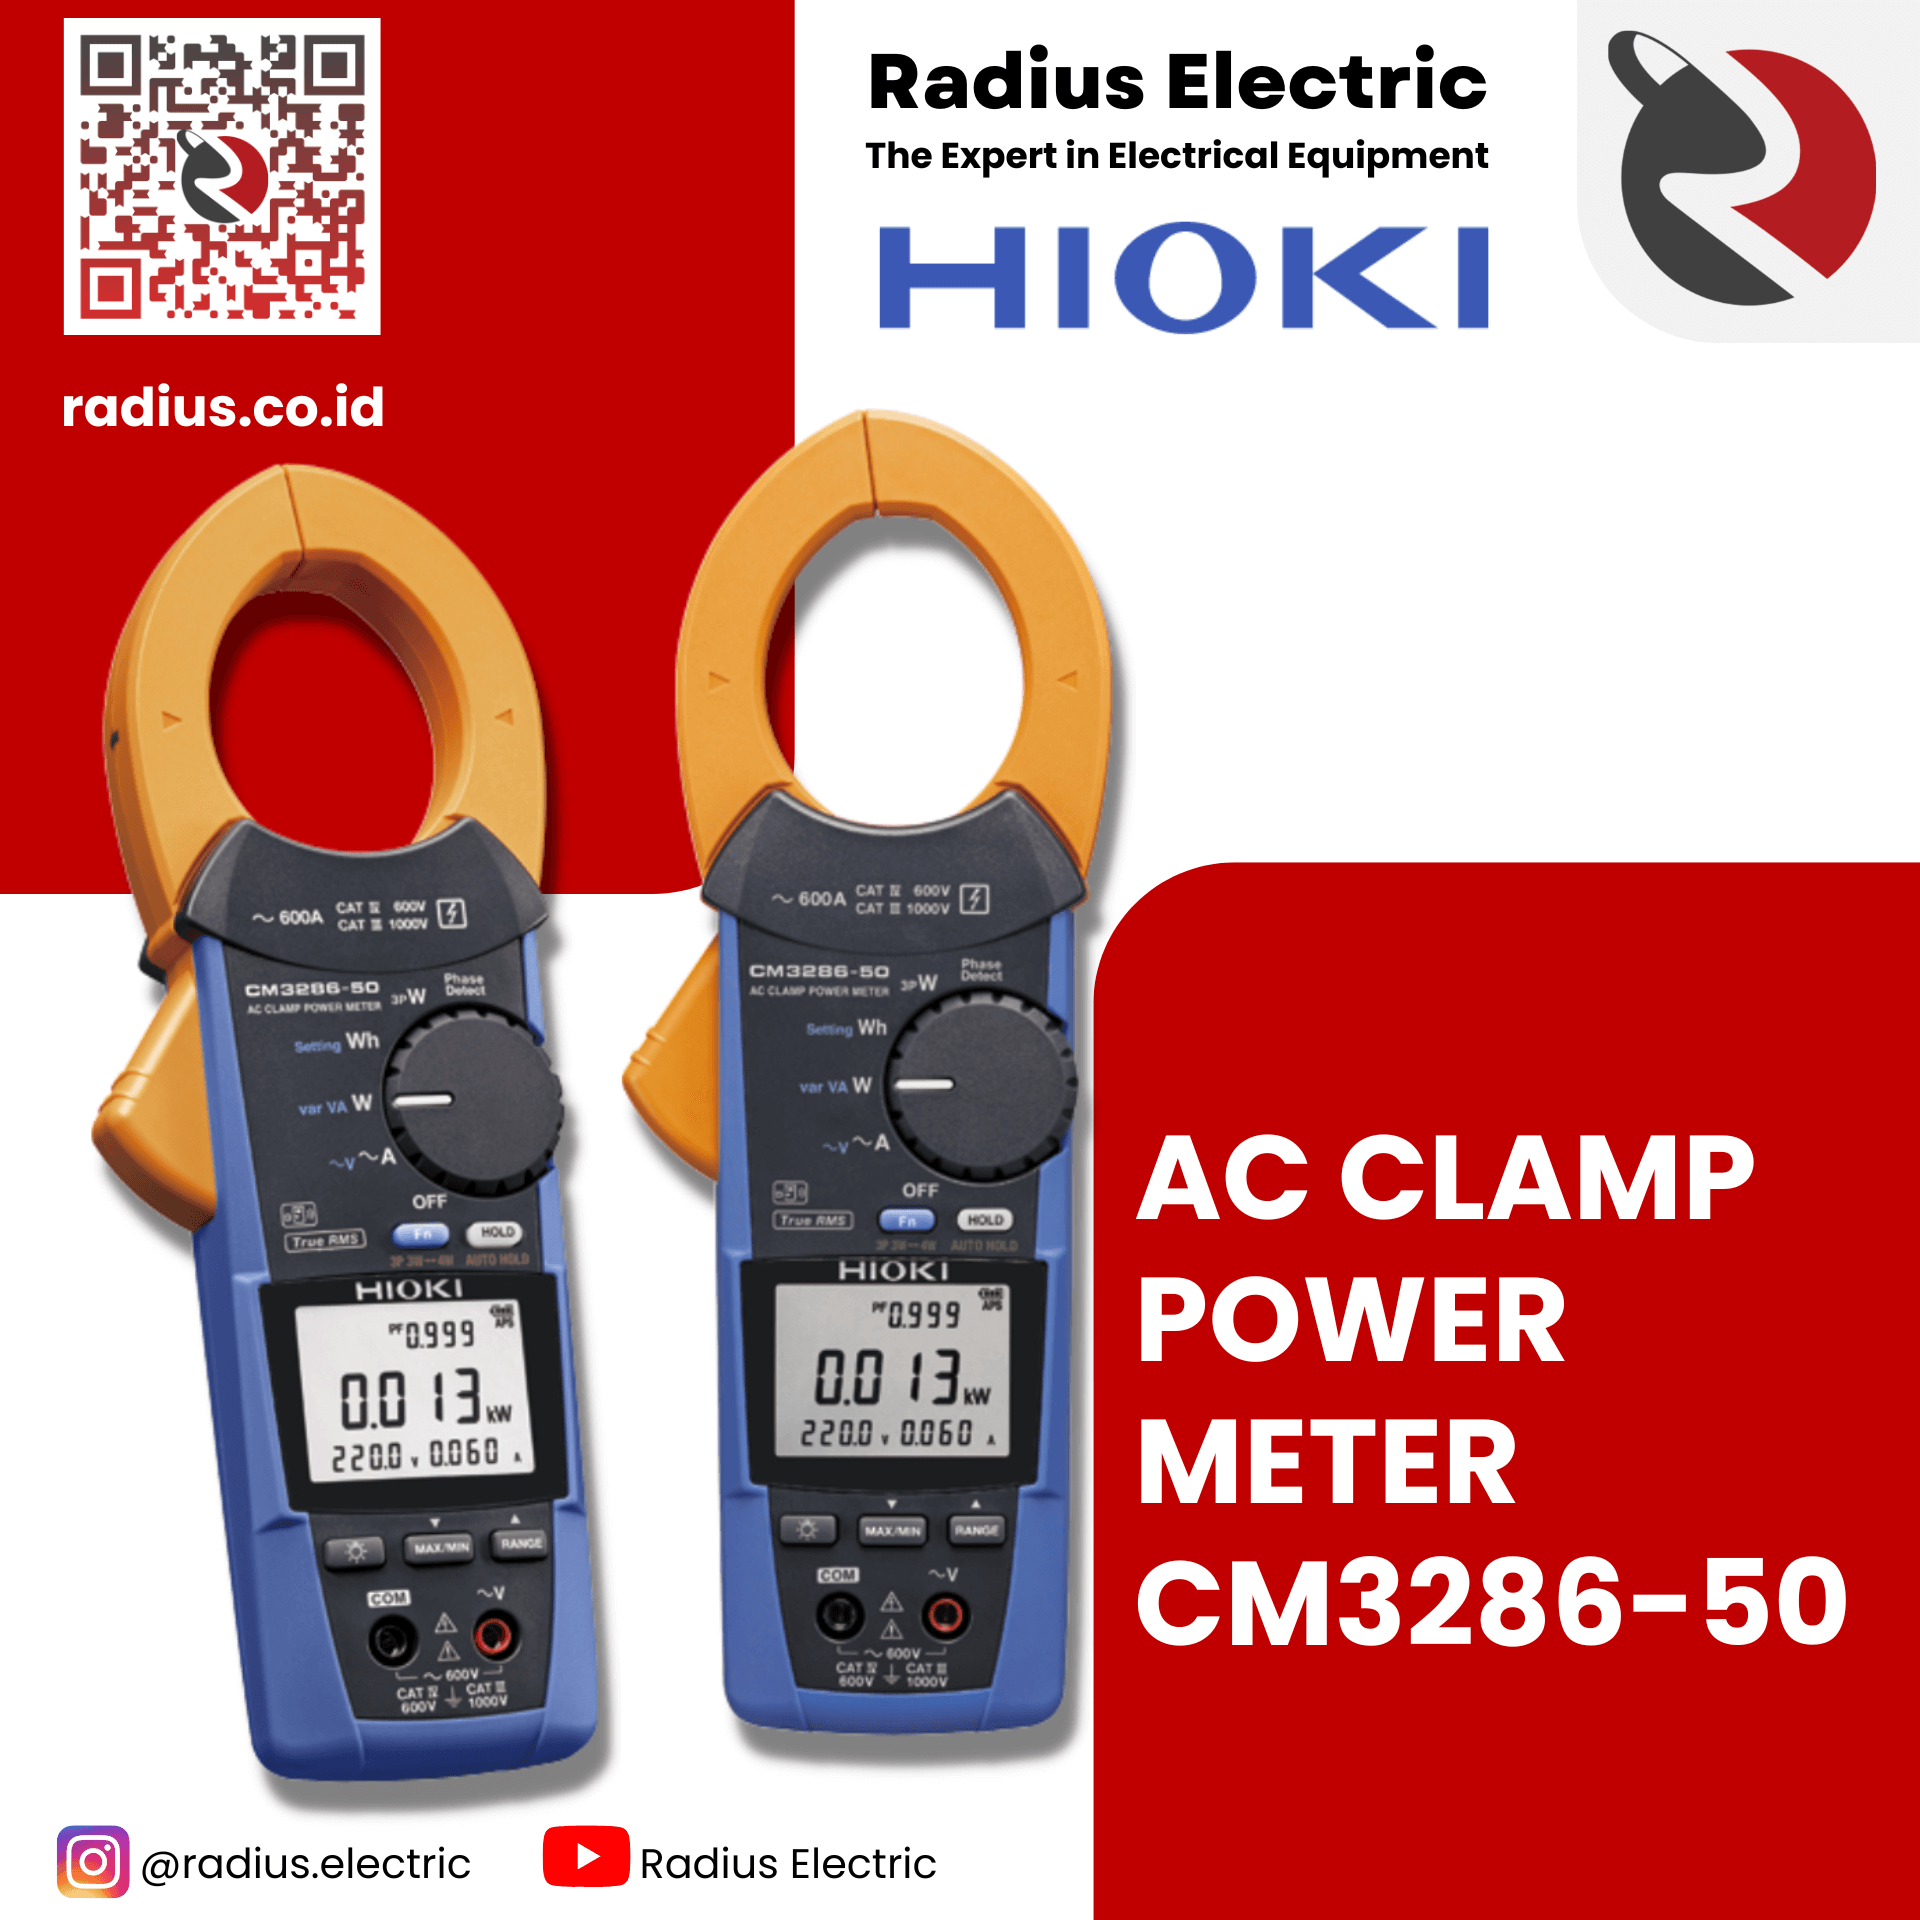 hioki cm3286-50 clamp power meter